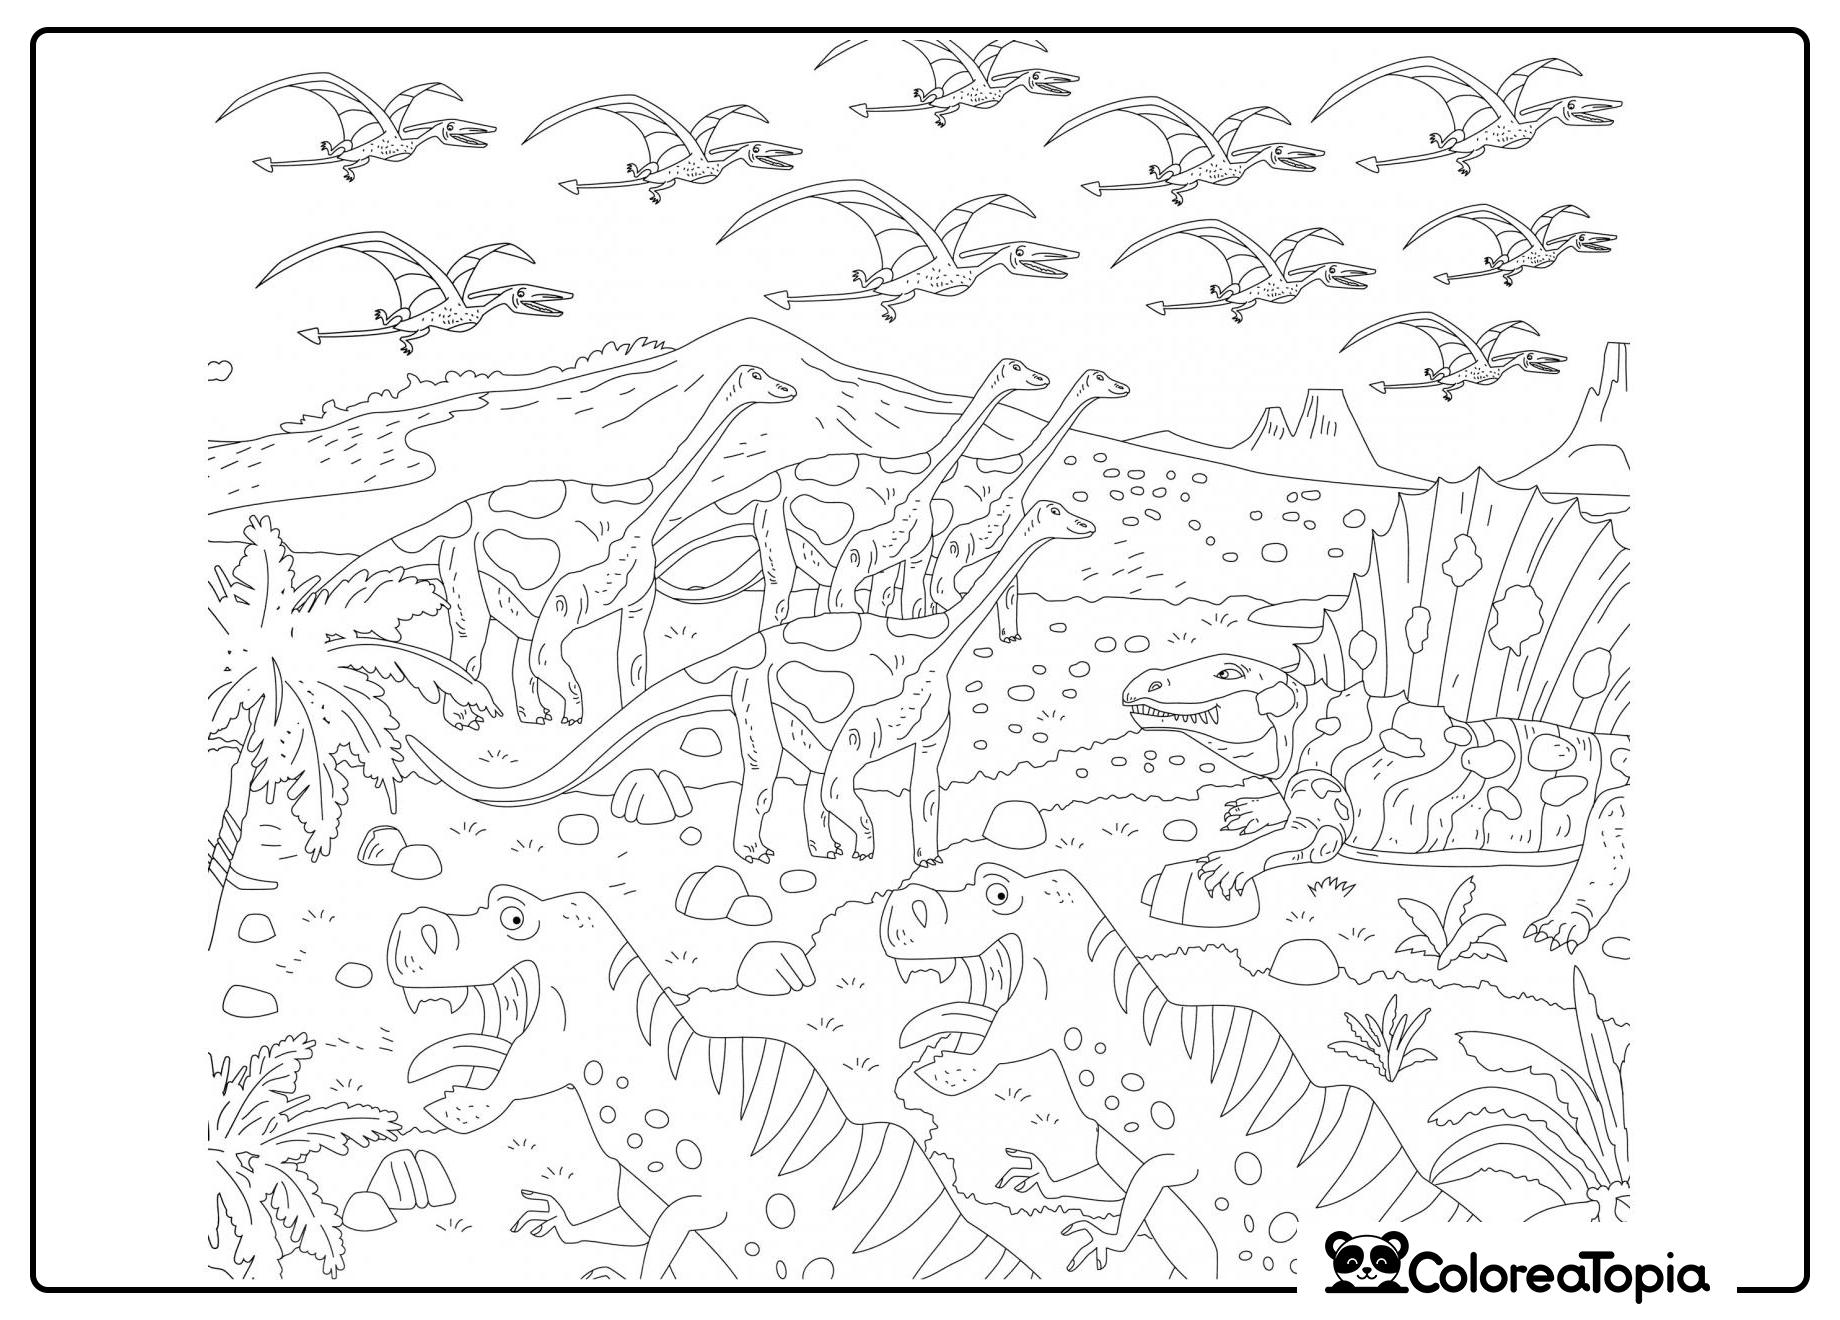 Mundo de dinosaurios - dibujo para colorear